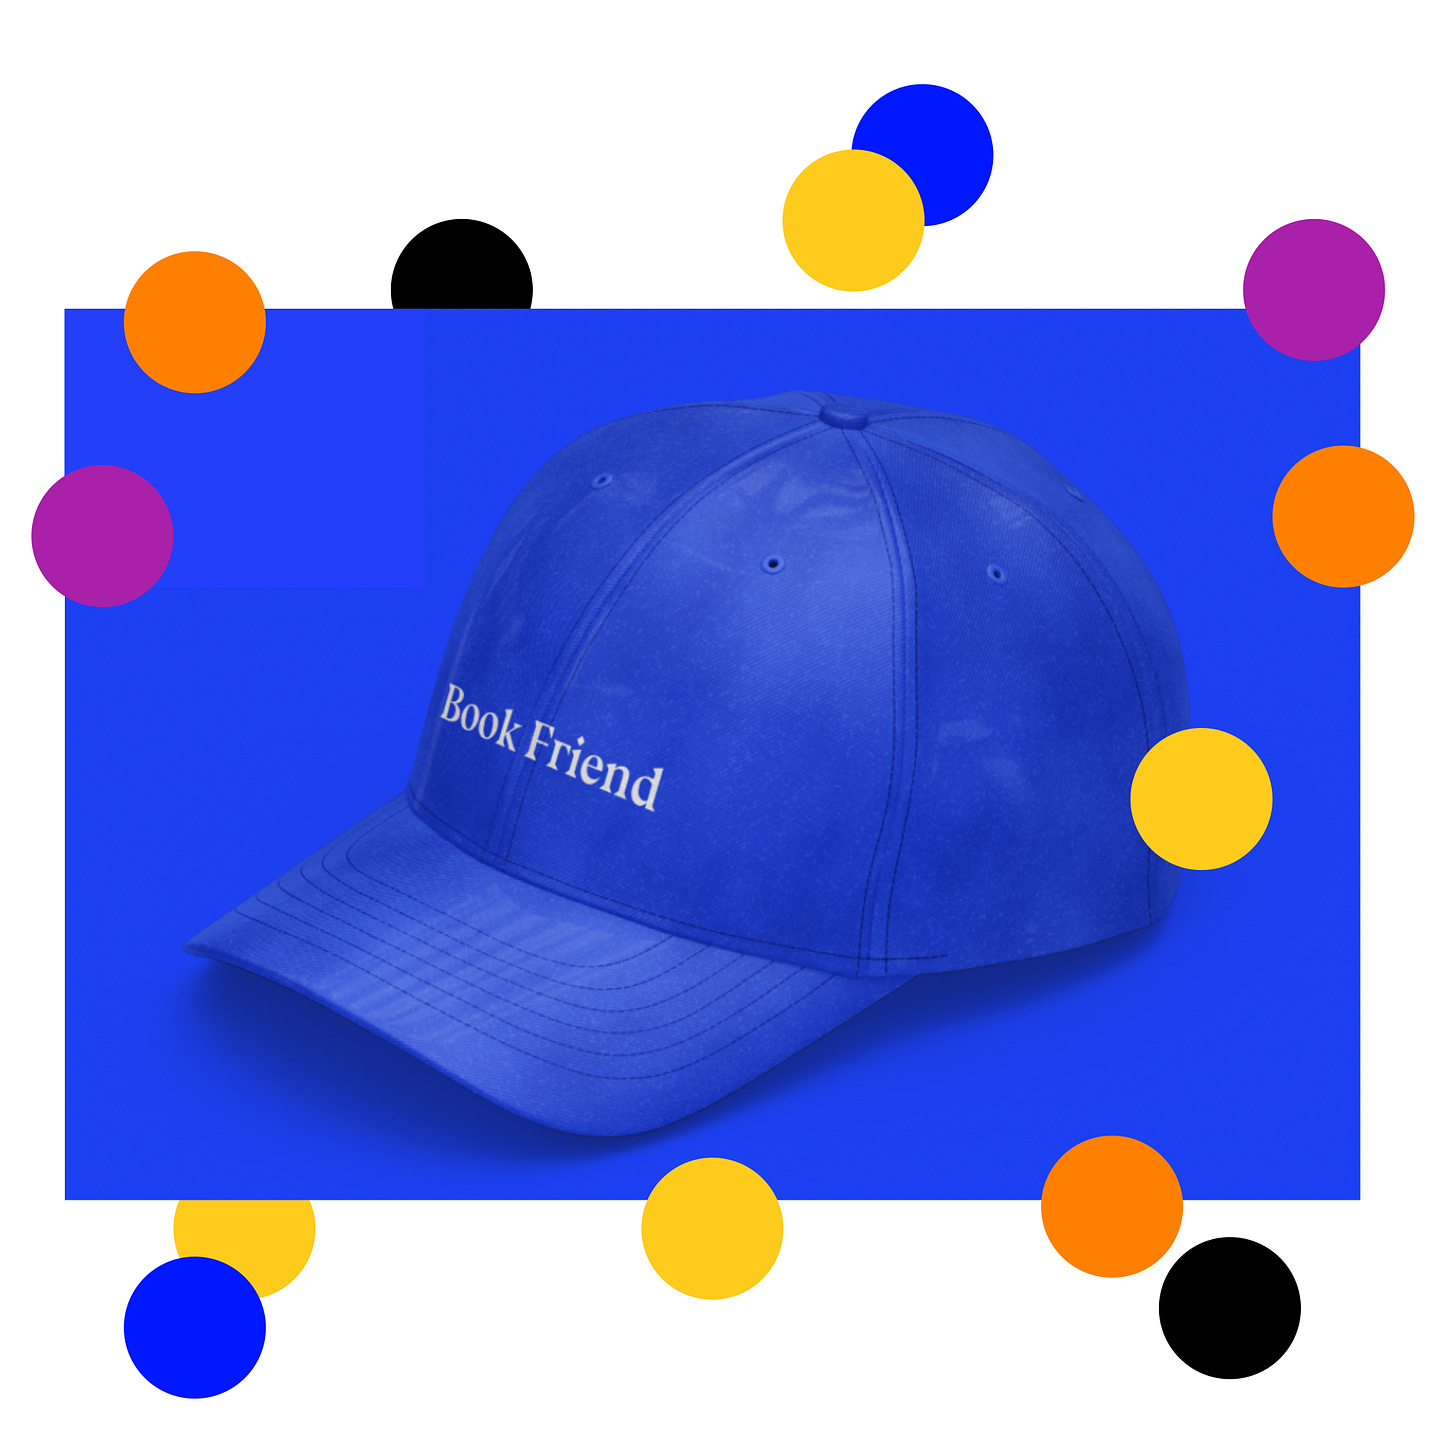 A blue cap that reads "Book Friend"